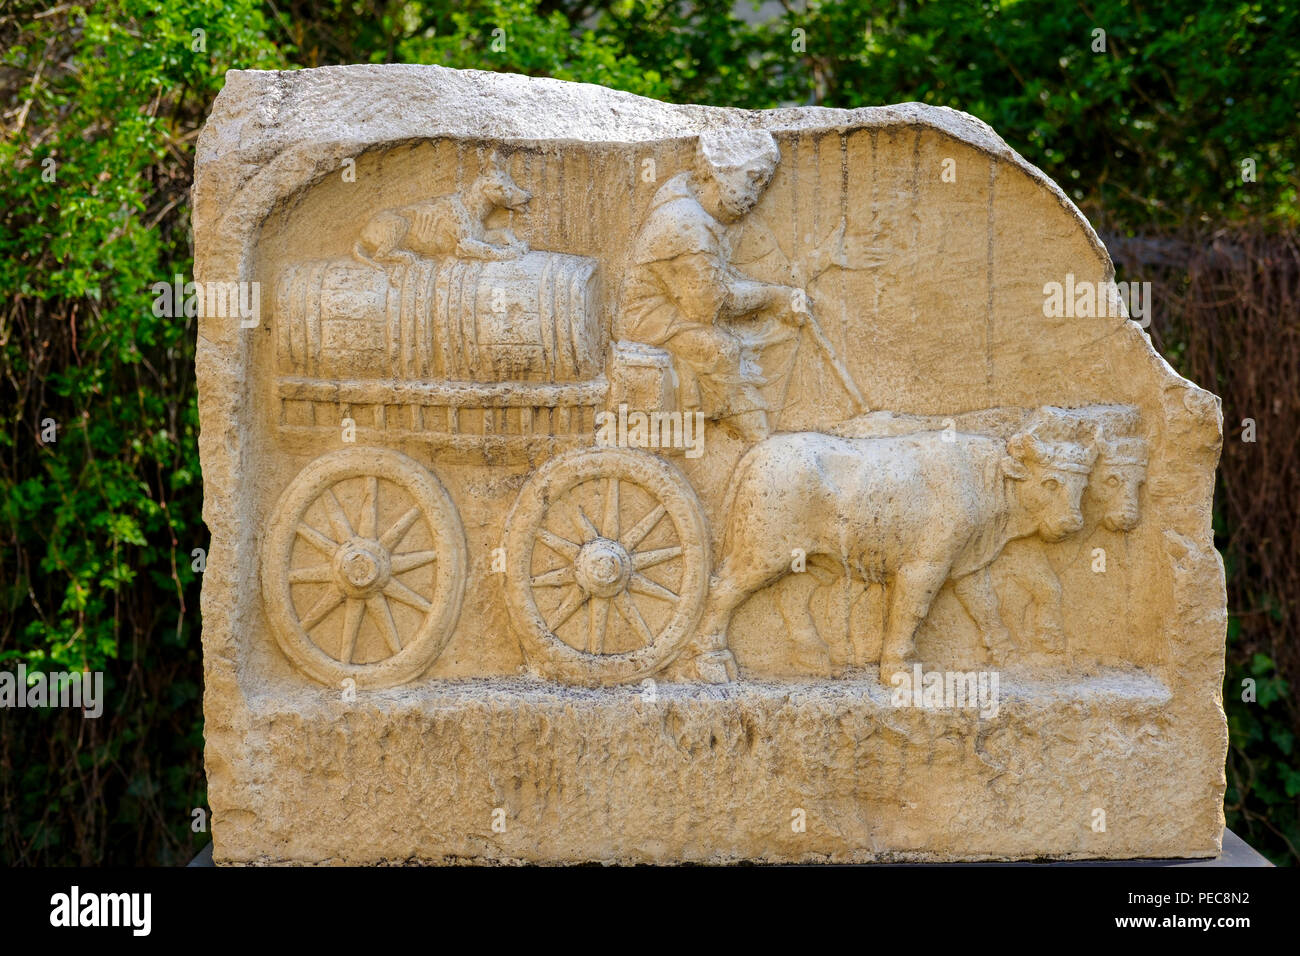 Rilievo romano di un bue carrello, Augsburg, Svevia, Baviera, Germania Foto Stock